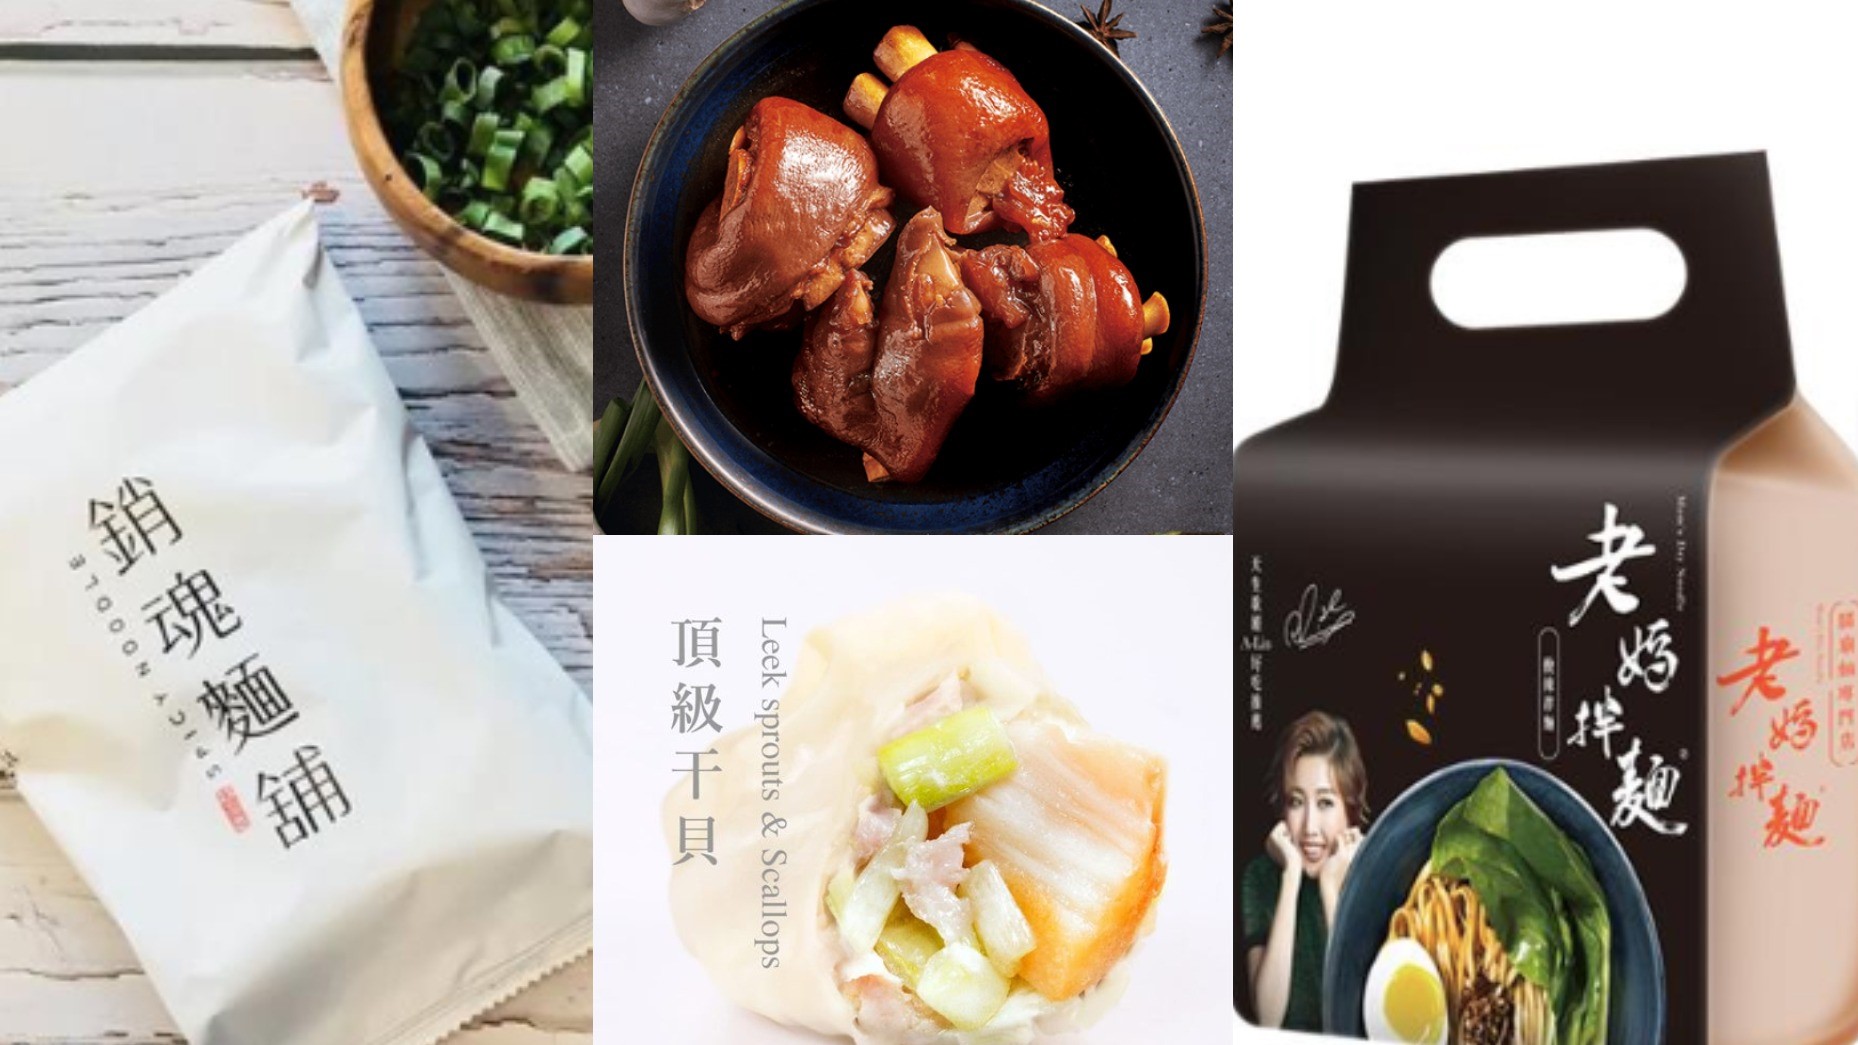 不用在台北找米其林餐廳 網購就能品嚐到人氣美食